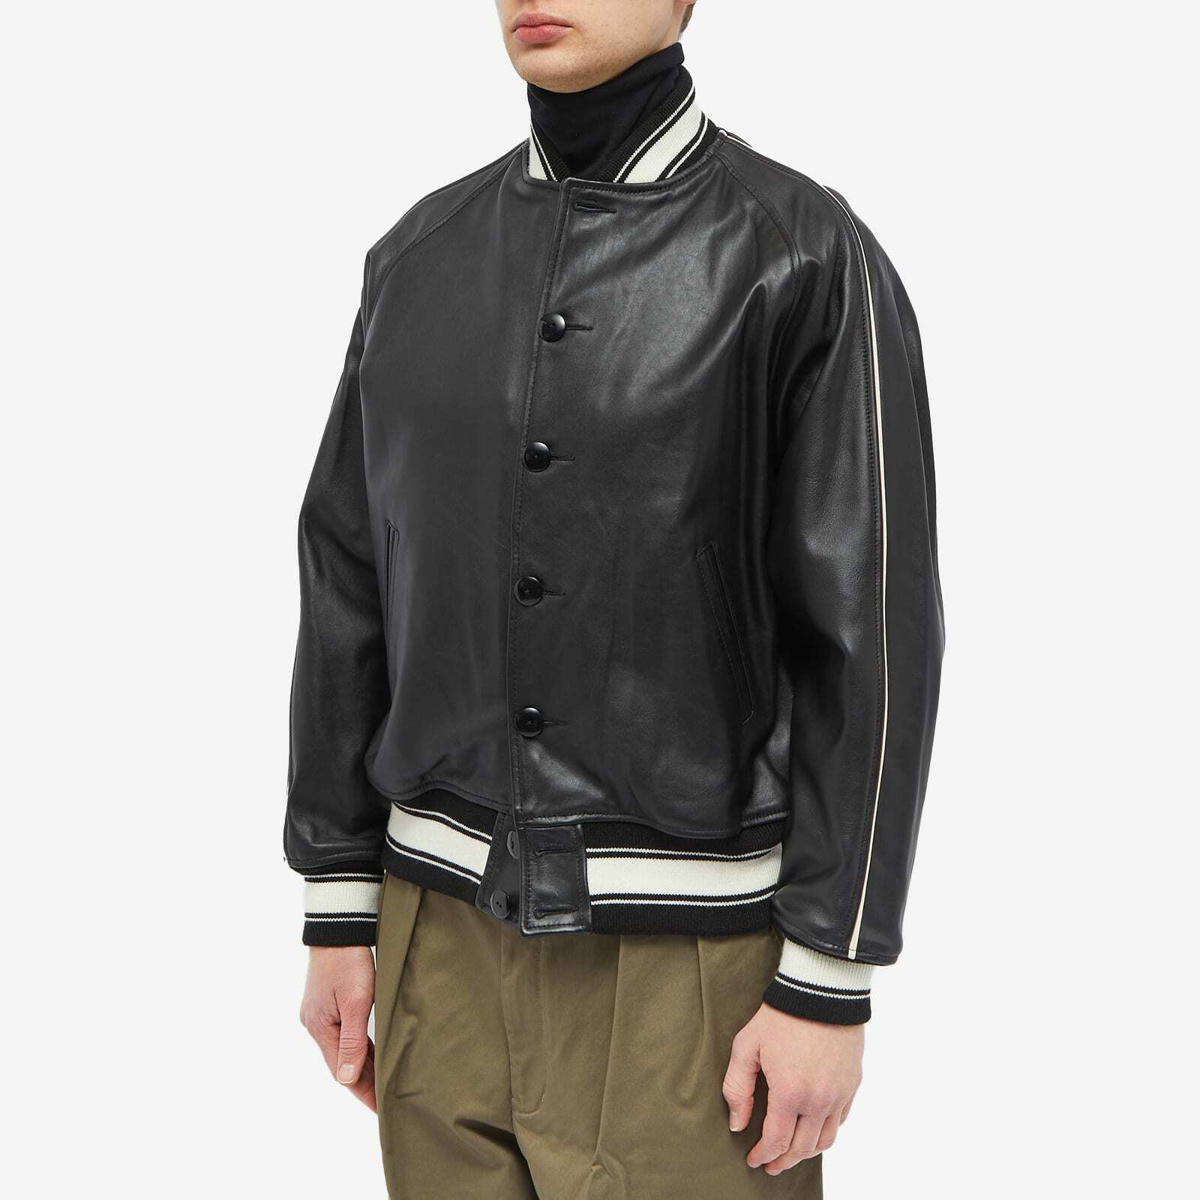 Beams Plus Men's Leather Varisity Jacket in Black Beams Plus